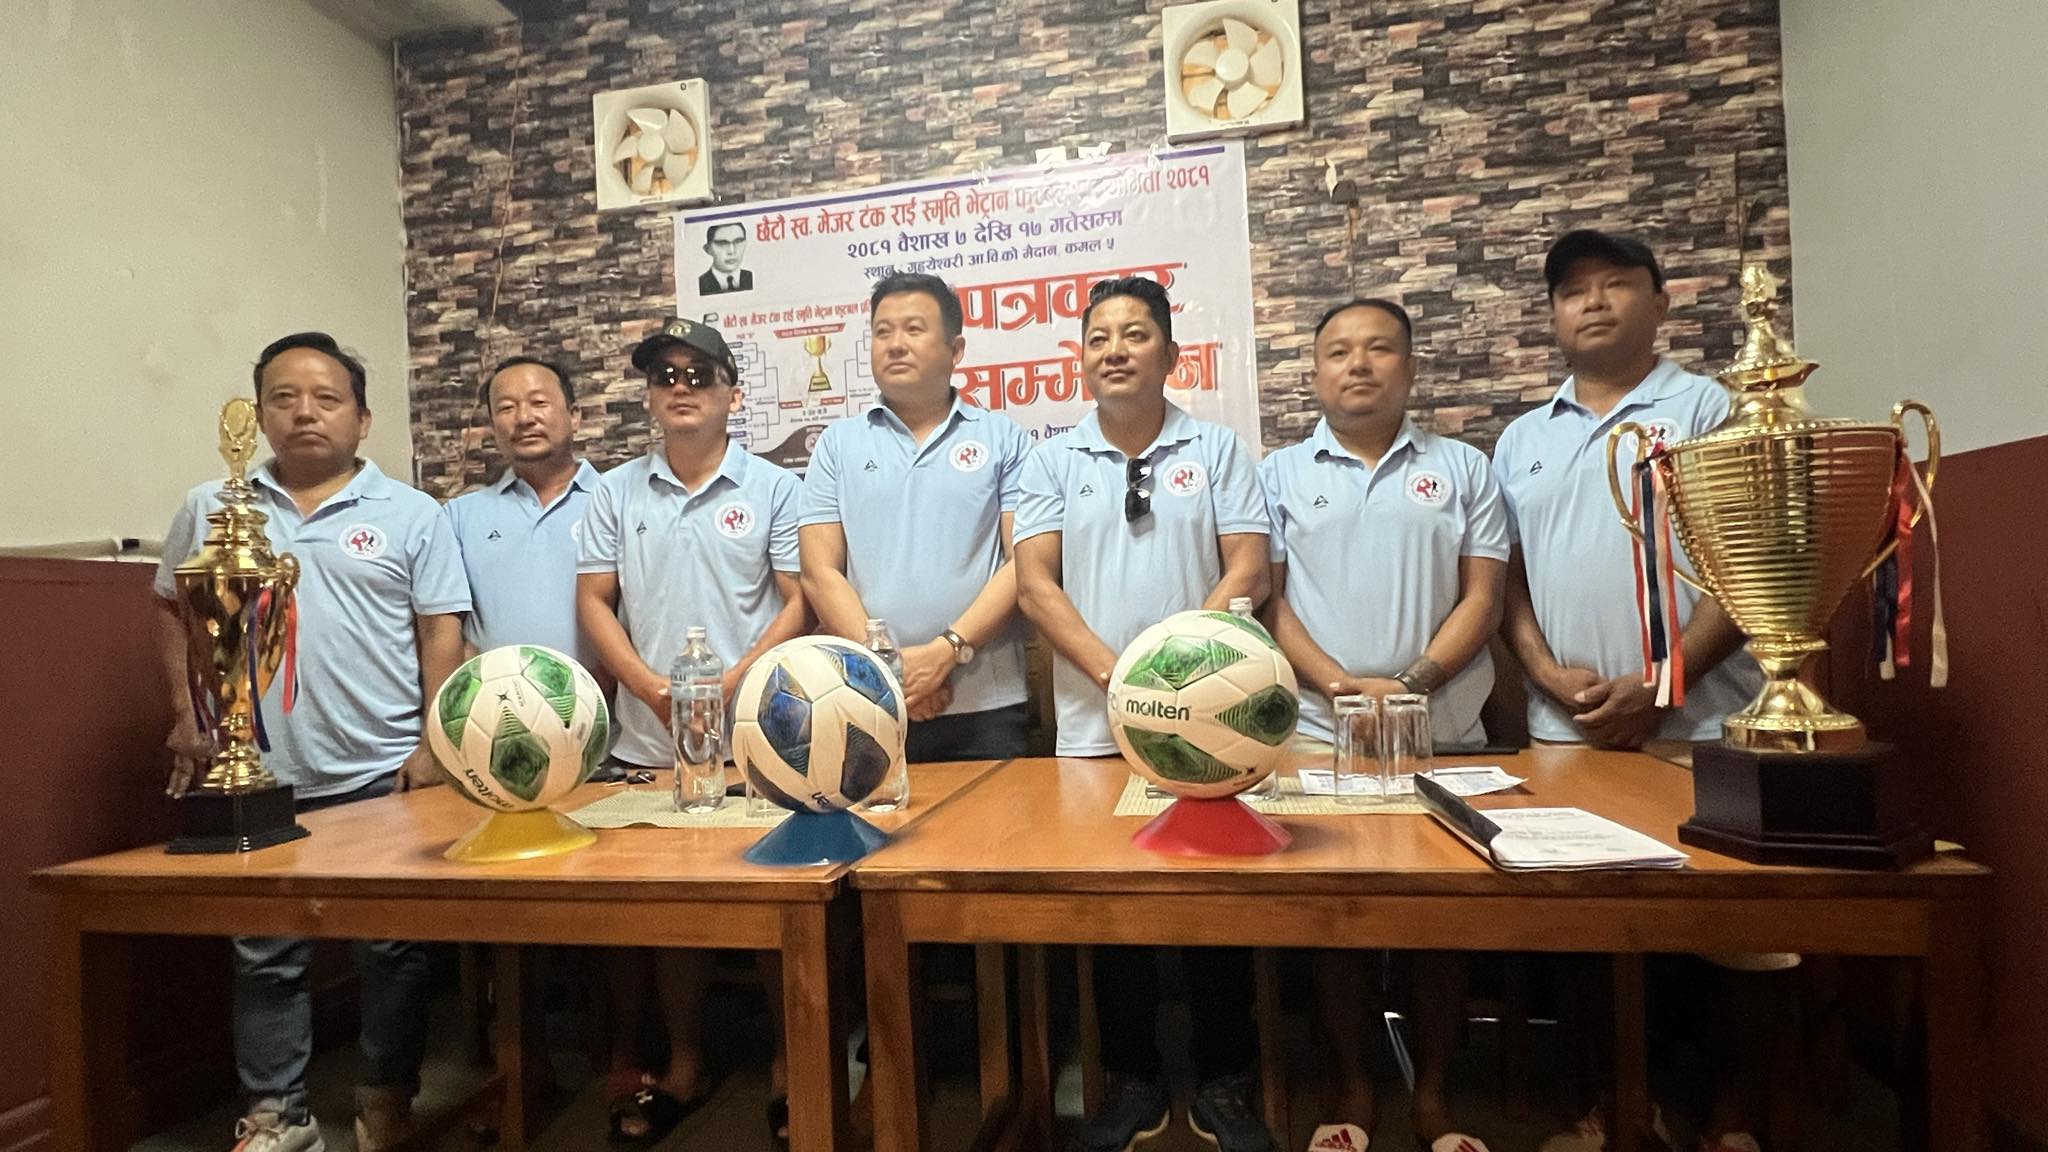 कमलमा मेजर टङ्क राई स्मृति भेट्रान कप फुटबल प्रतियोगिता हुँदै